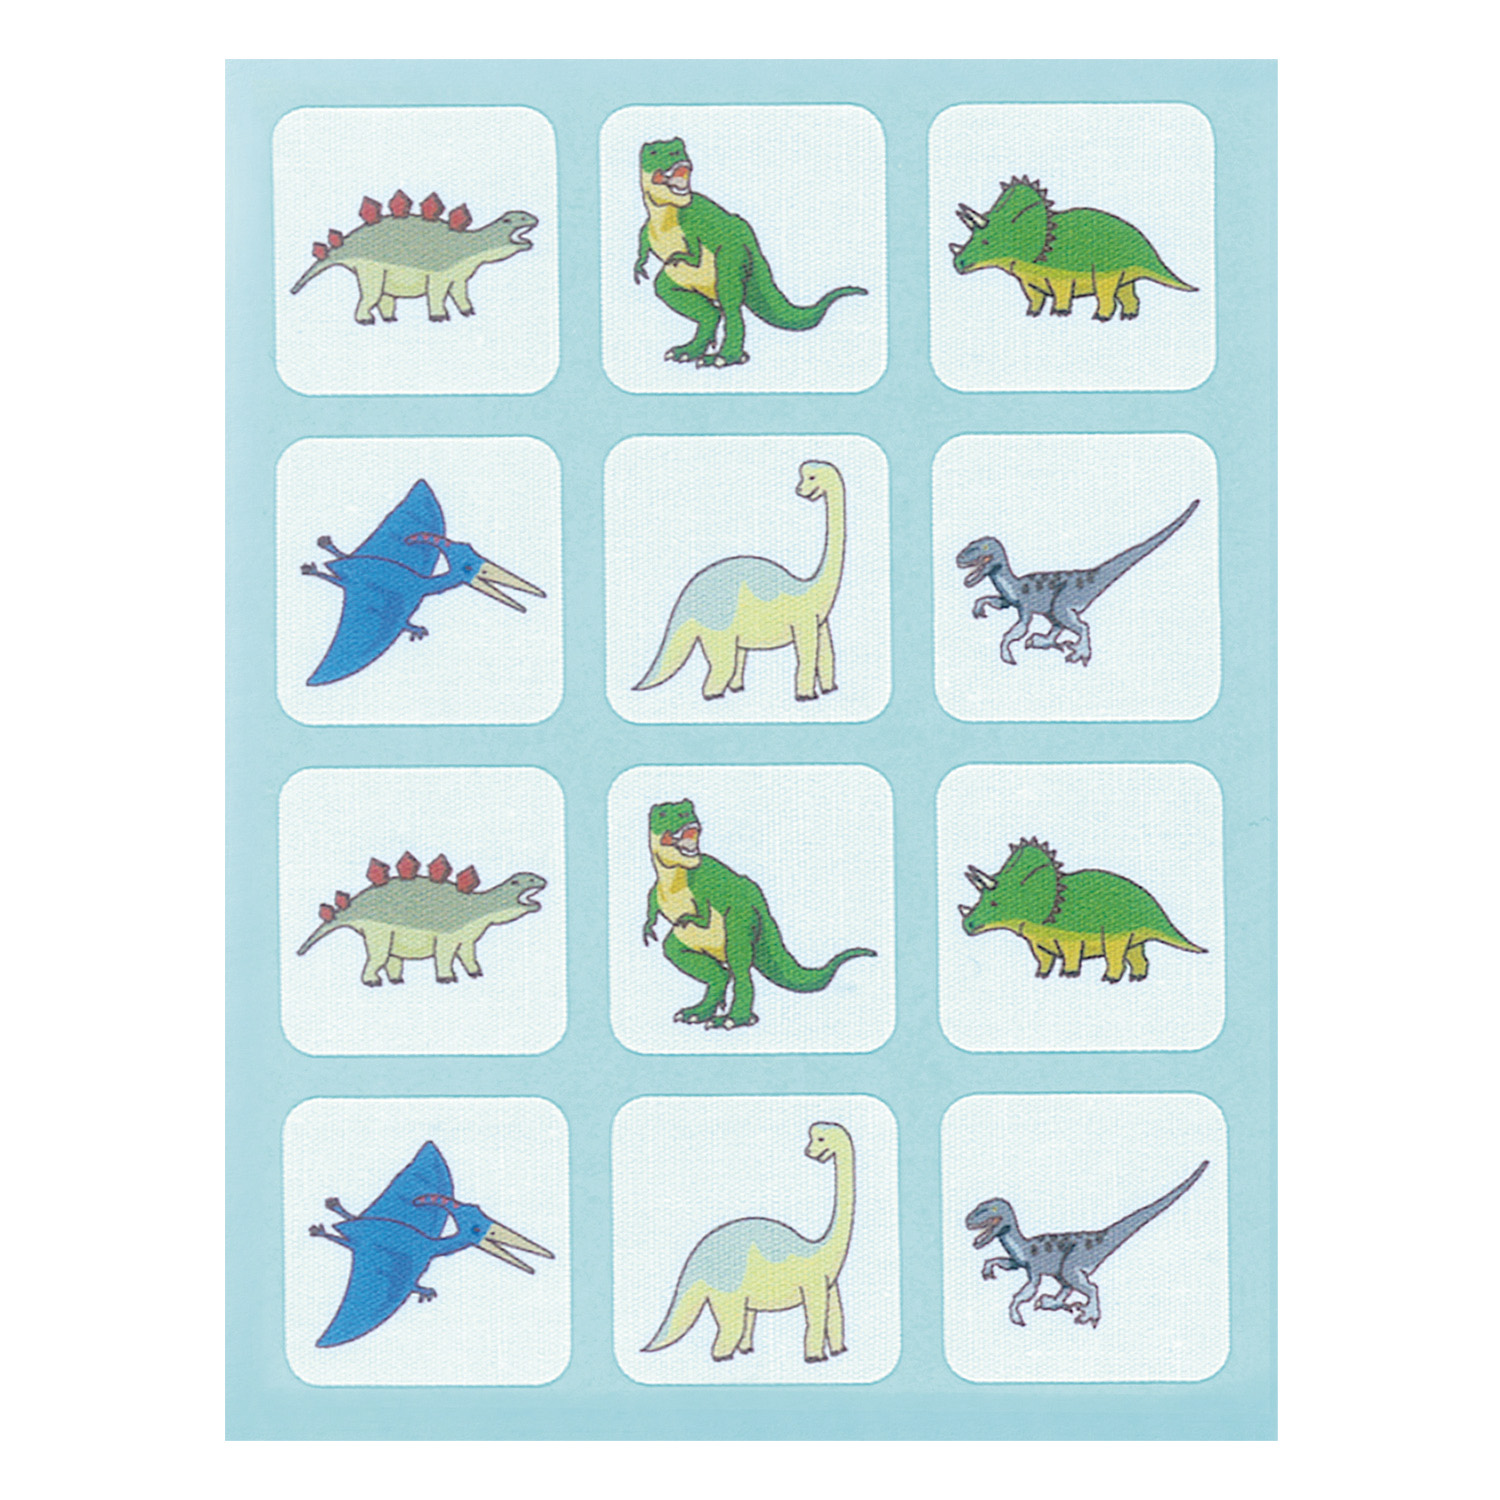 まいまーくシール マイマーク恐竜|TRUN-SHBUNP1138|商品カタログ 